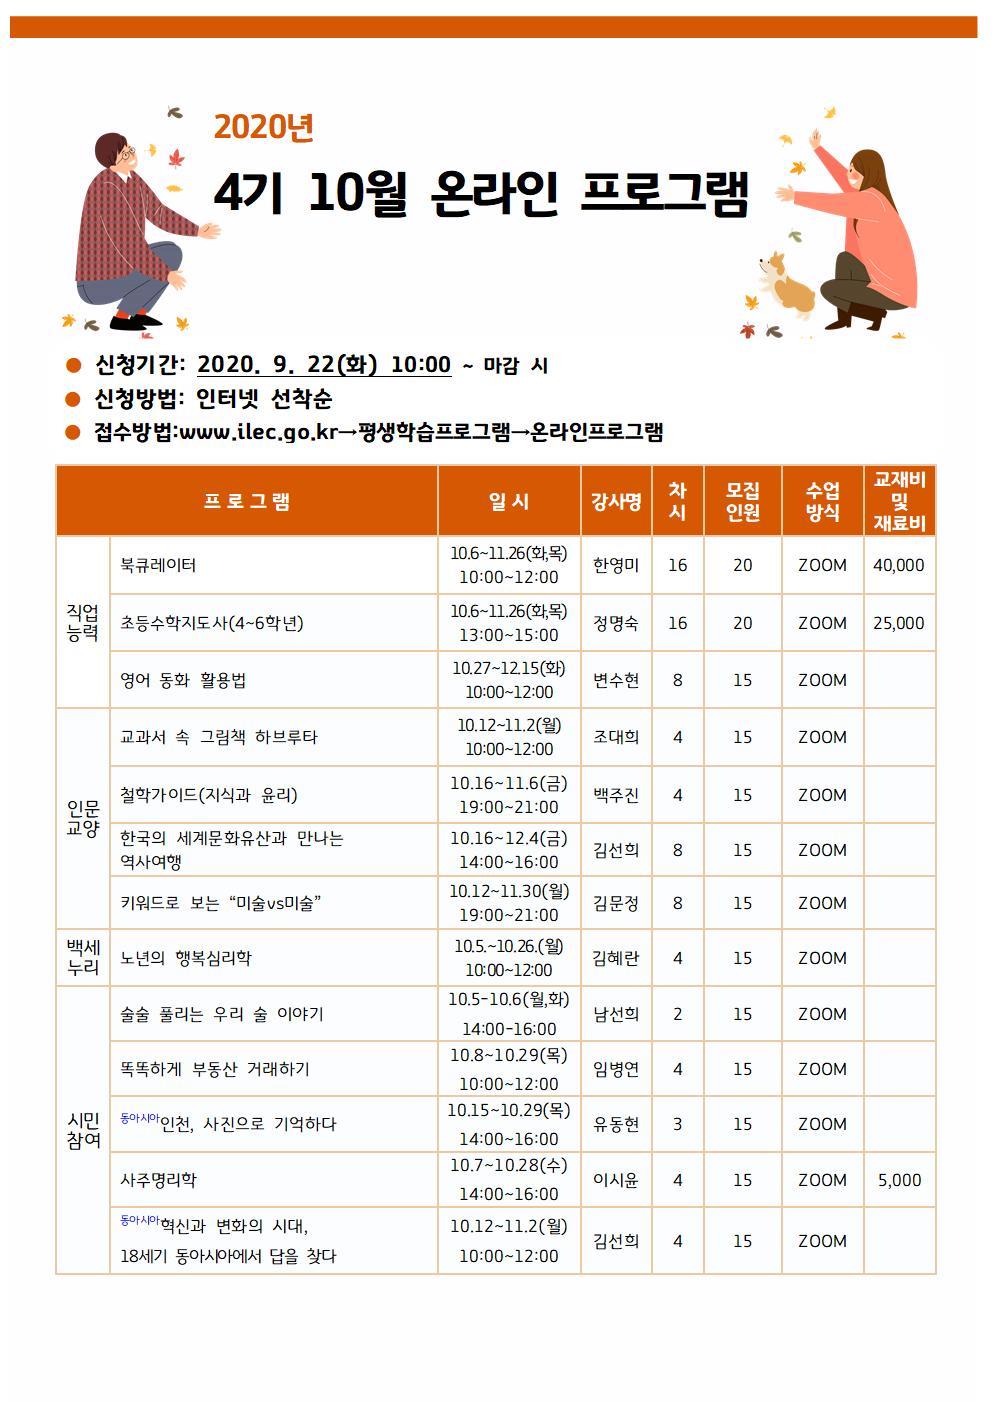 인천시교육청평생학습관 4기(10월) 온라인 평생교육프로그램 수강생 모집의 1번째 이미지